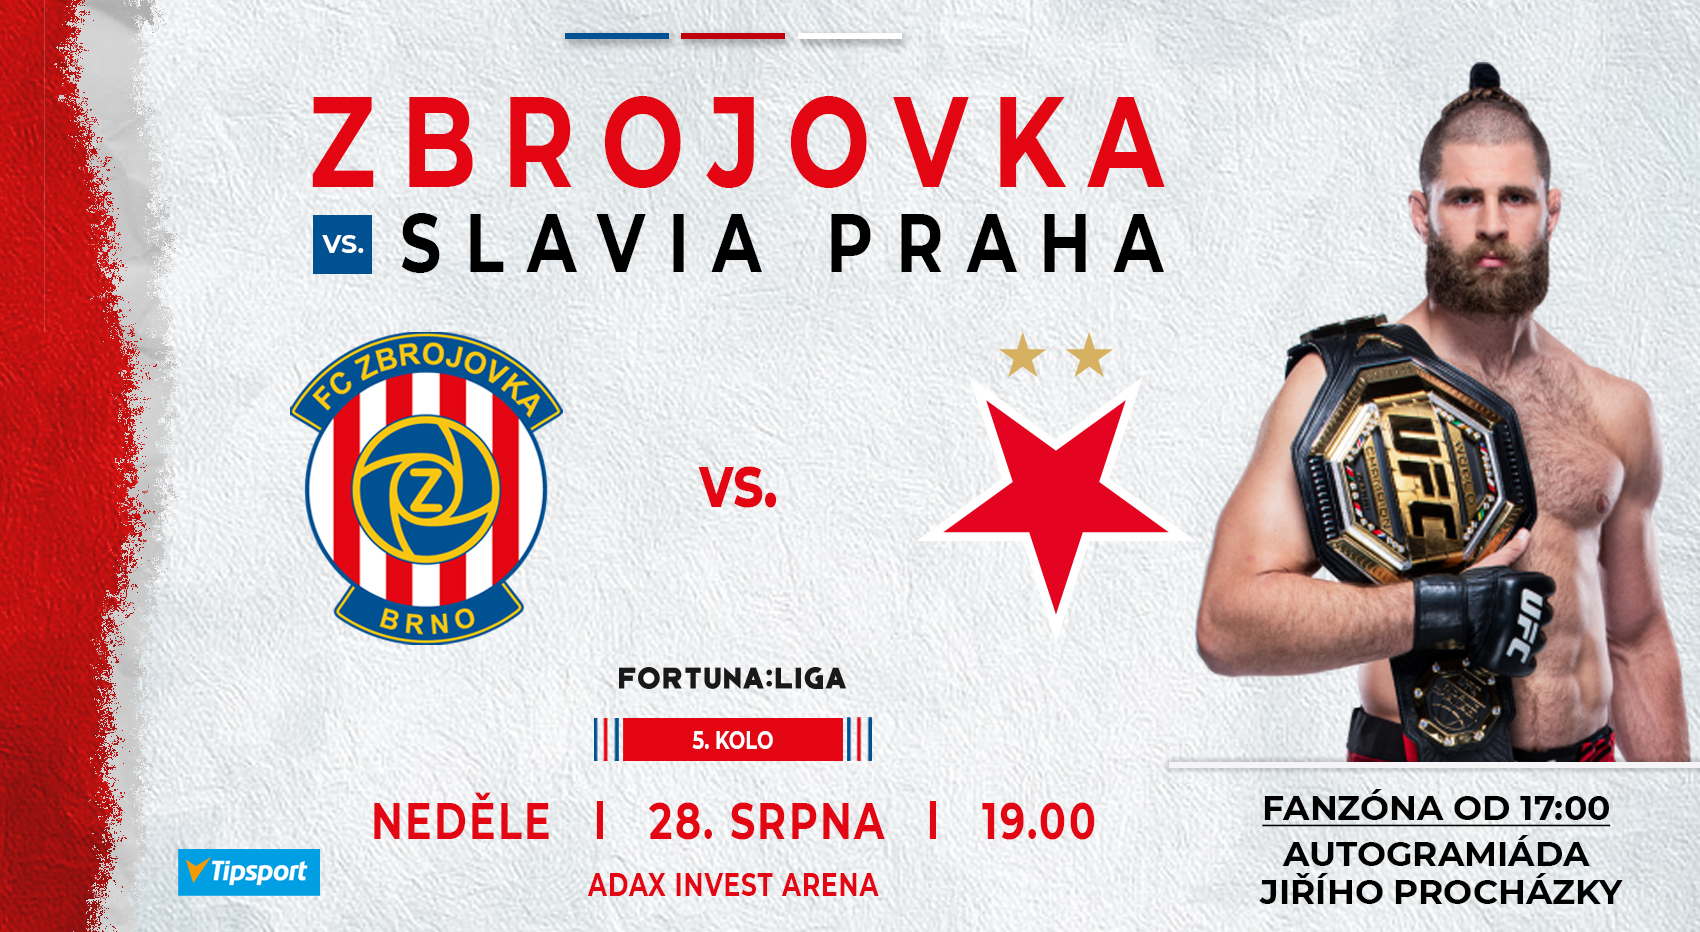 PREVIEW: Čtvrtým soupeřem je Slavia, utkání je vyprodané!